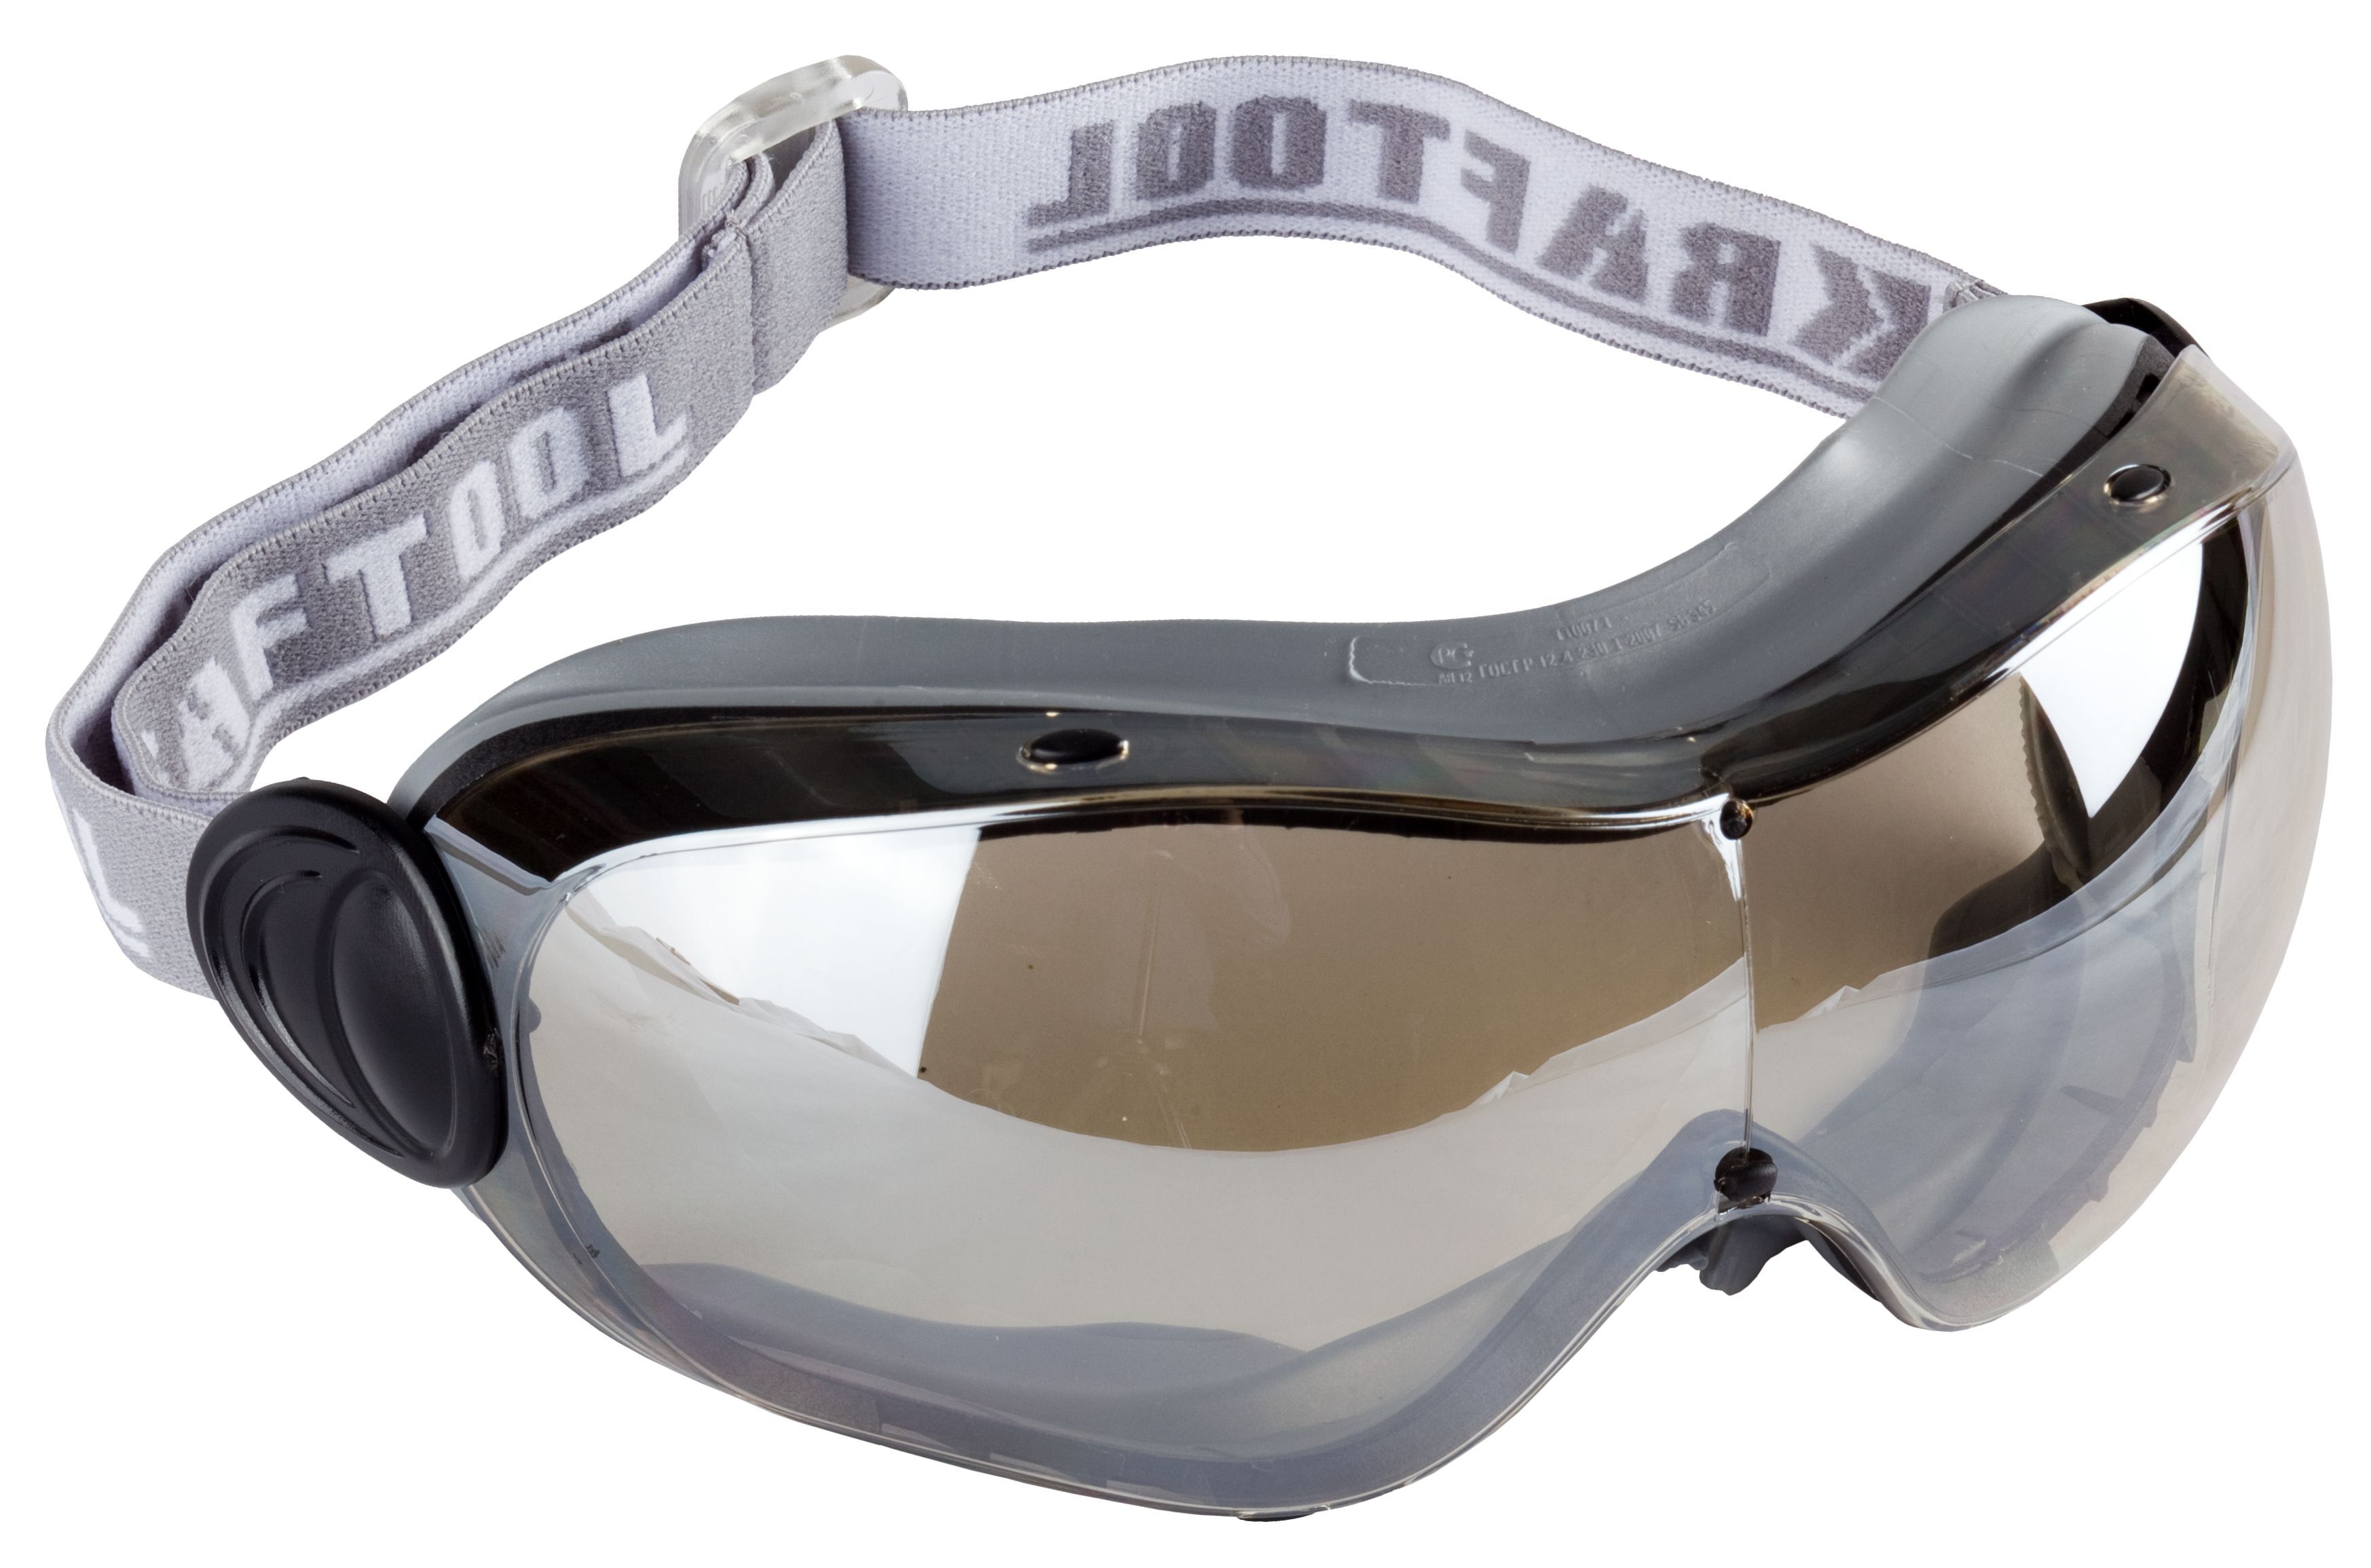 Защитные очки от пыли. 11007 Очки Kraftool защитные. Очки защитные Kraftool Expert 110305. Очки крафтул эксперт защитные 11007. Защитные очки Kraftool Expert.